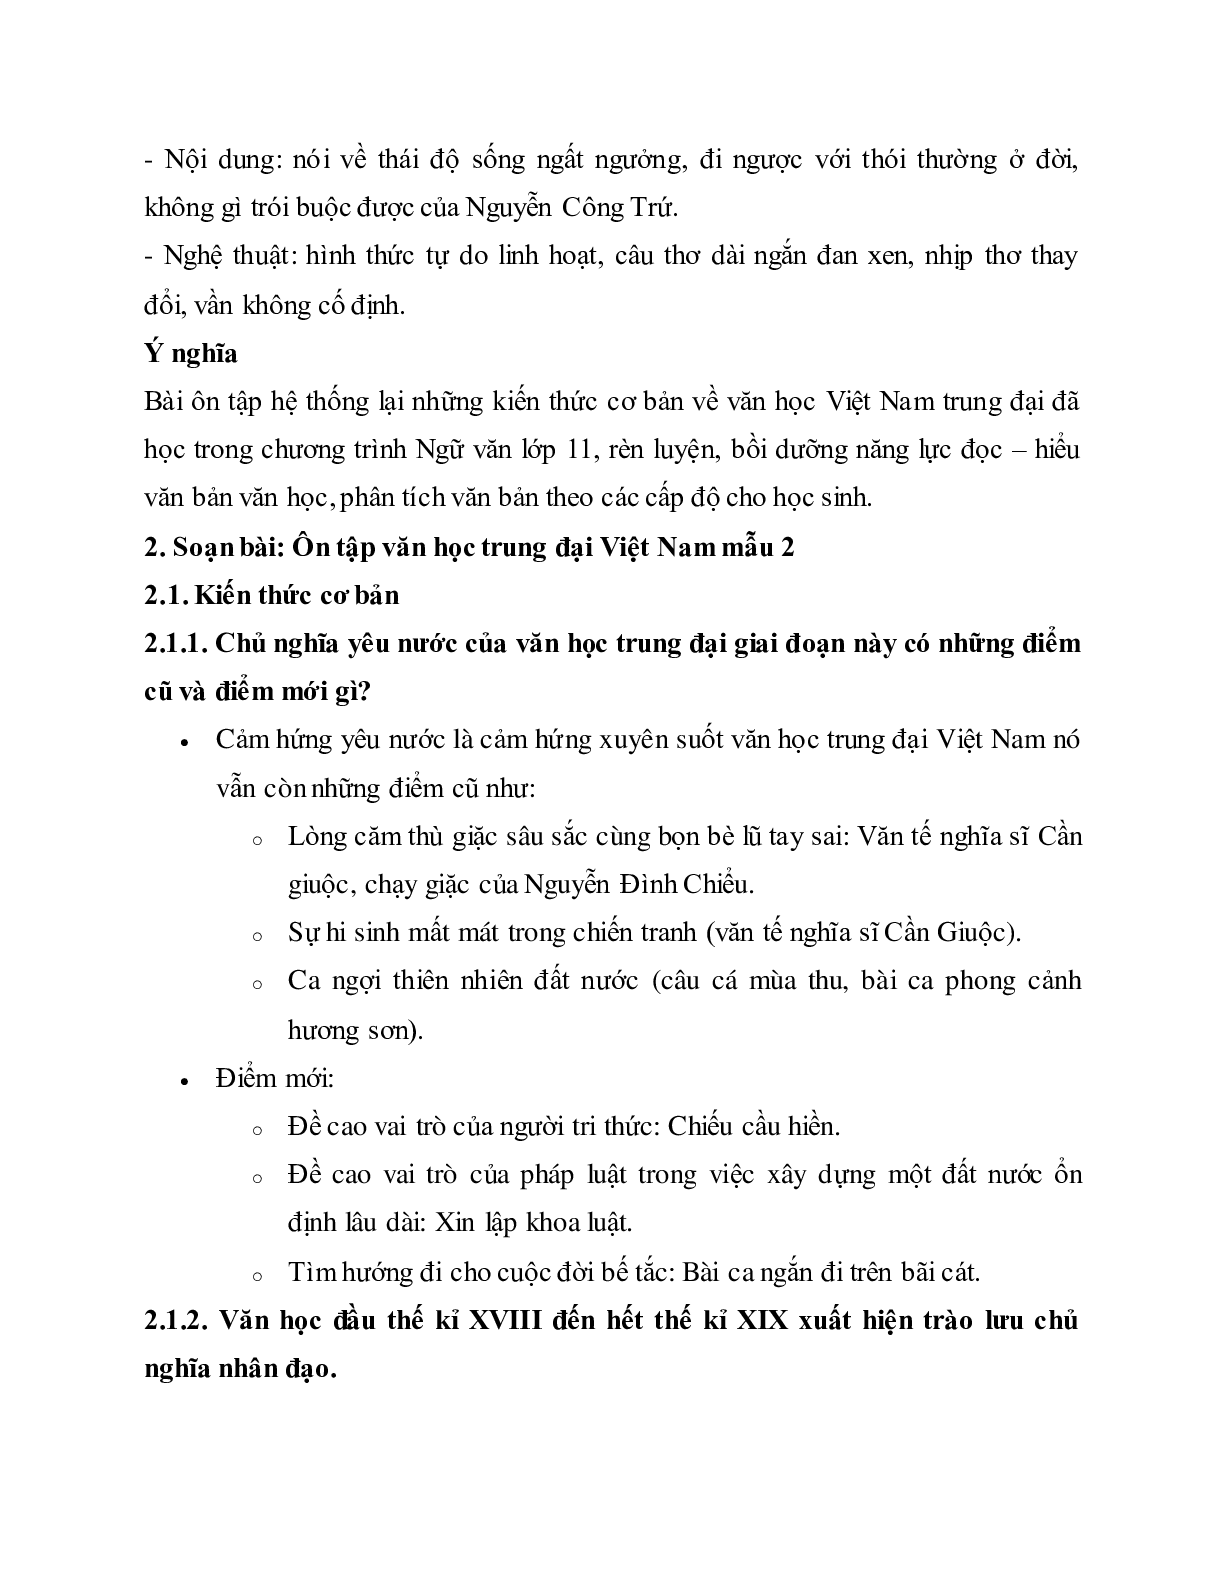 Soạn bài Ôn tập văn học trung đại Việt Nam - ngắn nhất Soạn văn 11 (trang 6)